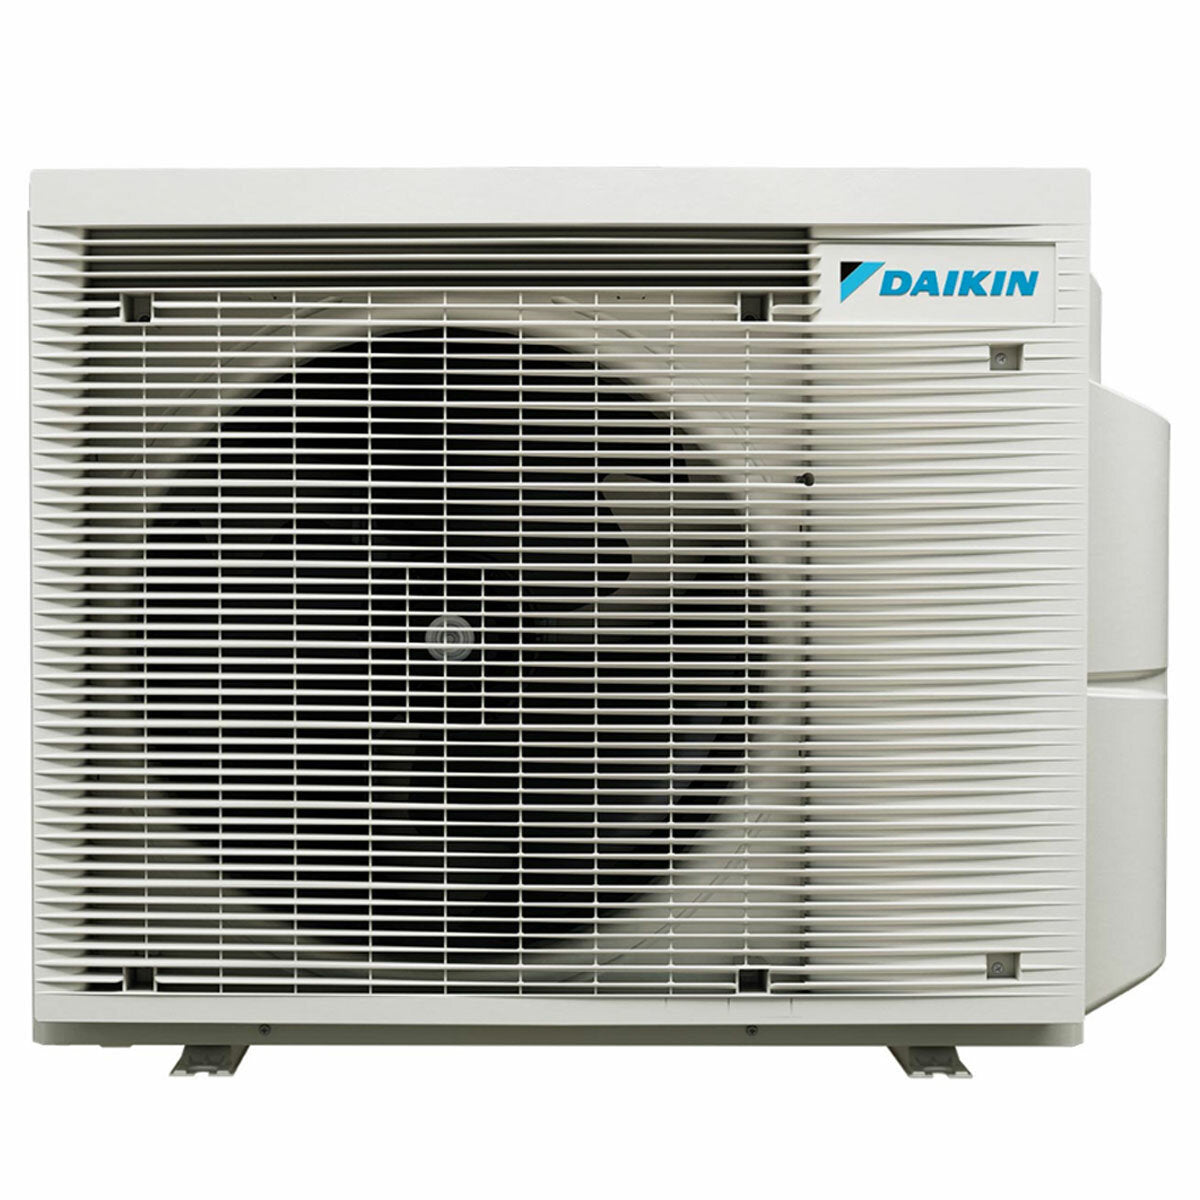 Daikin Emura 3 trial split air conditioner 7000+9000+18000 BTU inverter A+ wifi outdoor unit 6.8 kW White